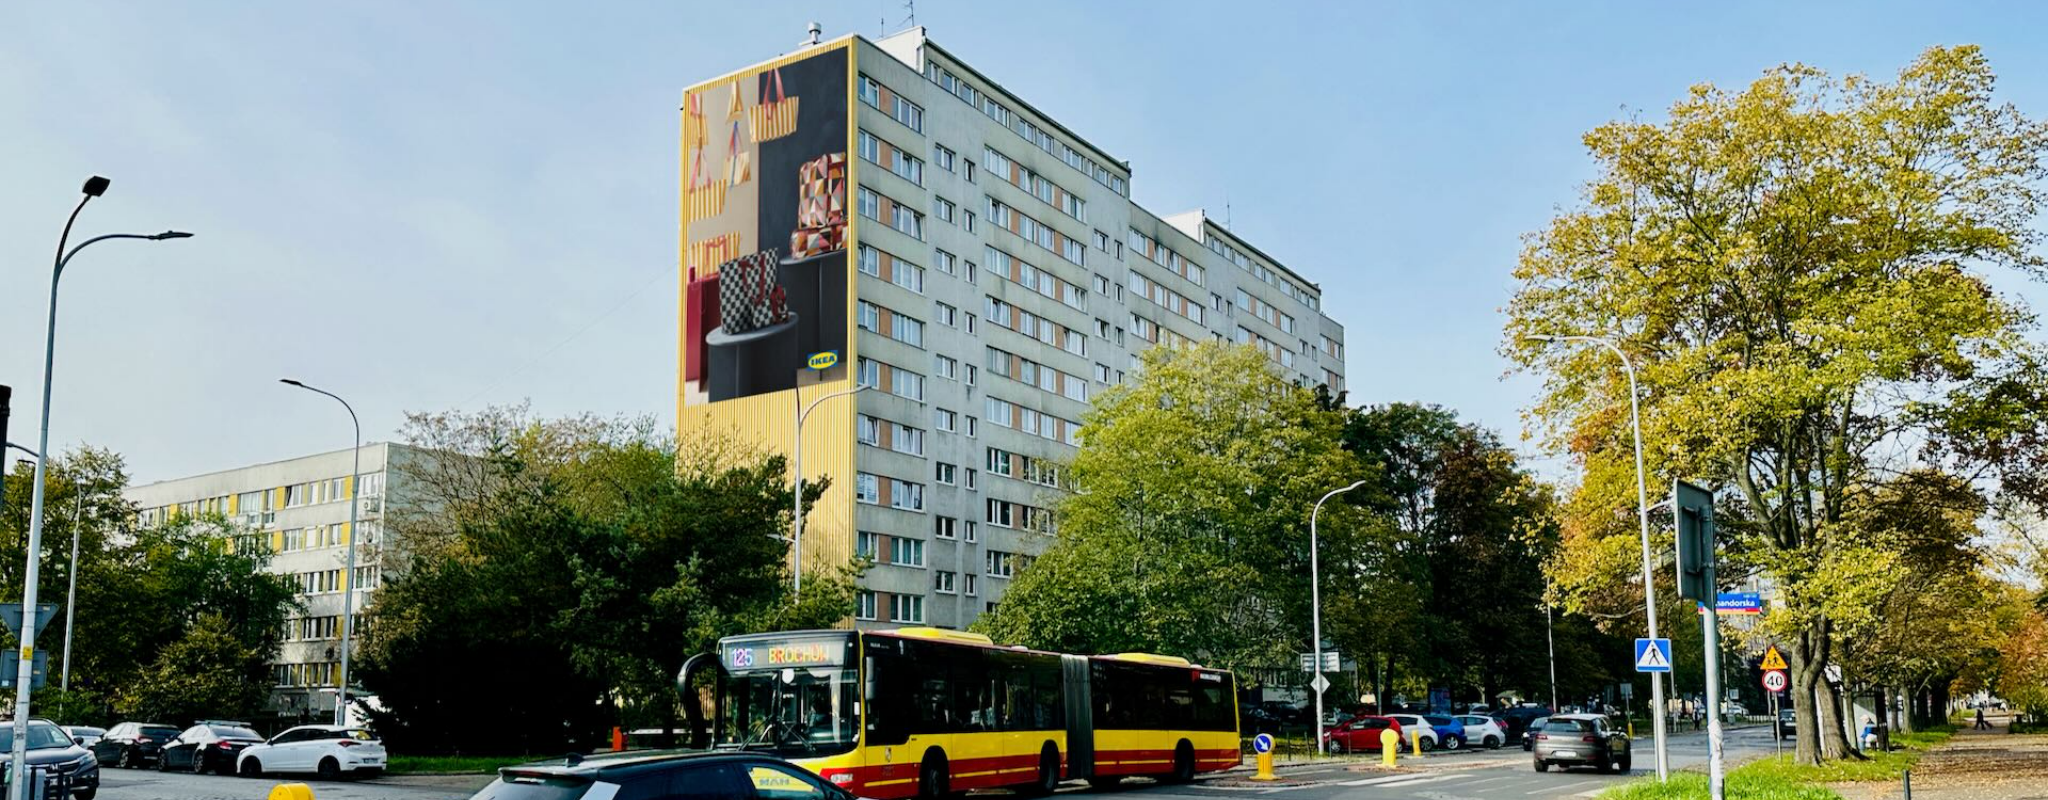 reklama na Wielkiej we Wrocławiu